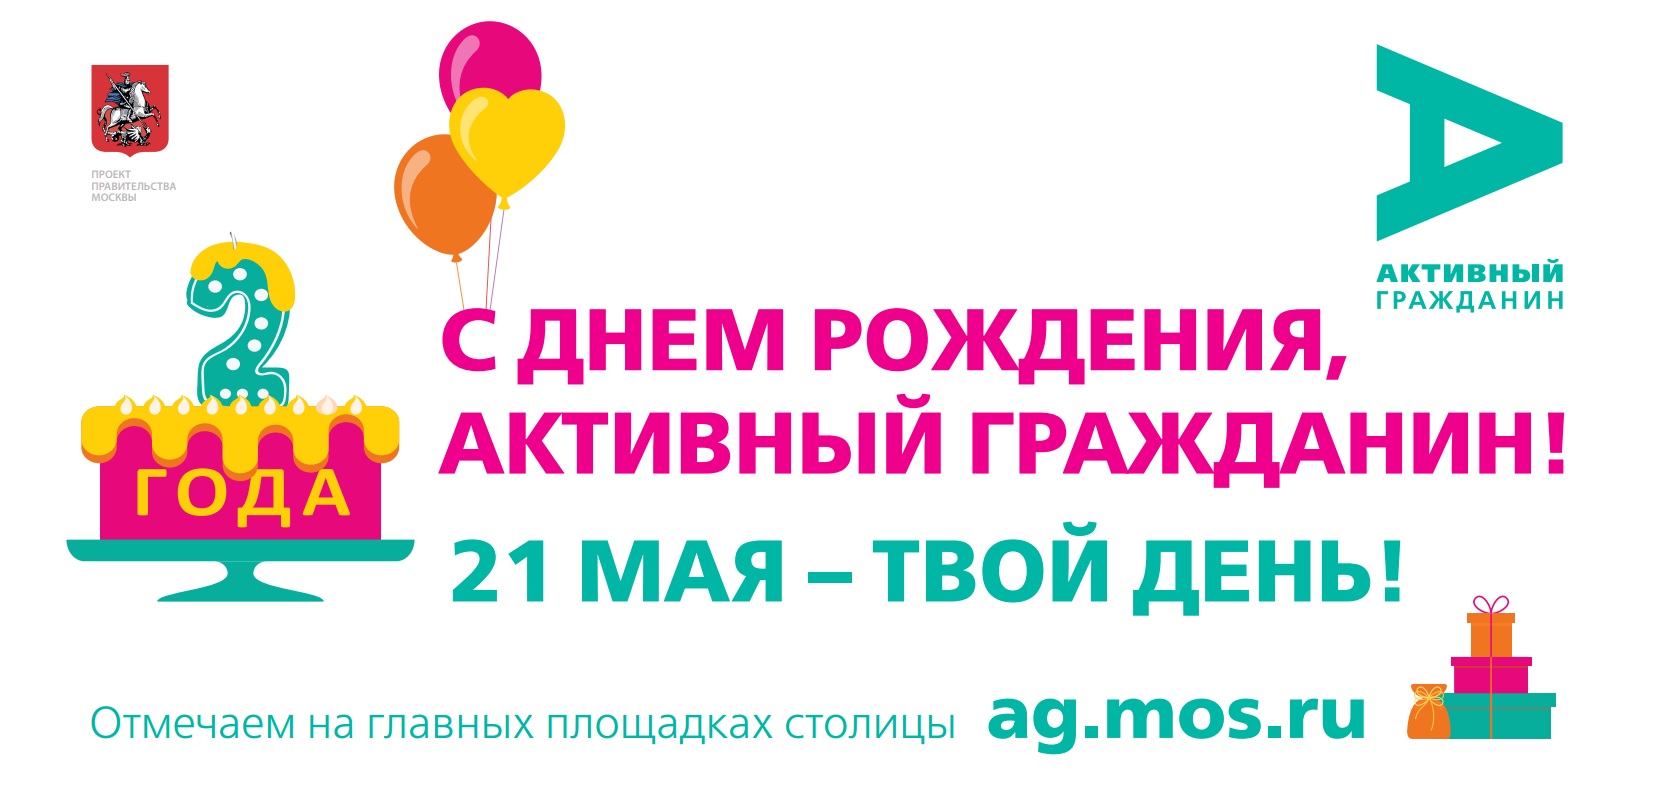 Проект "Активный гражданин" приглашает на день рождения